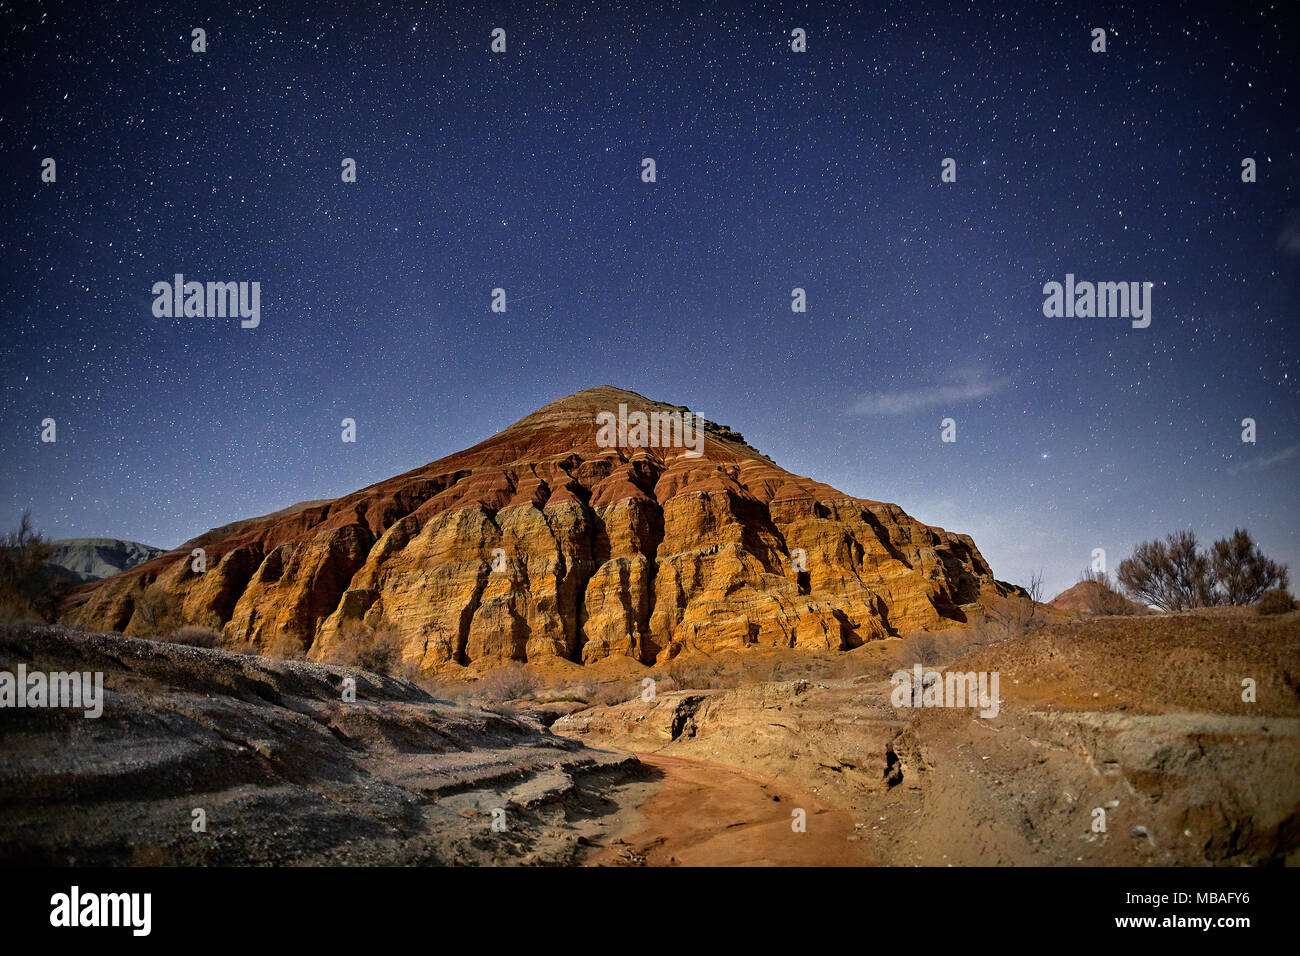 Roter Berg der Pyramide in der Wüste nachts Sternenhimmel Hintergrund. Astronomie Fotografie von Raum und Konstellationen. Stockfoto